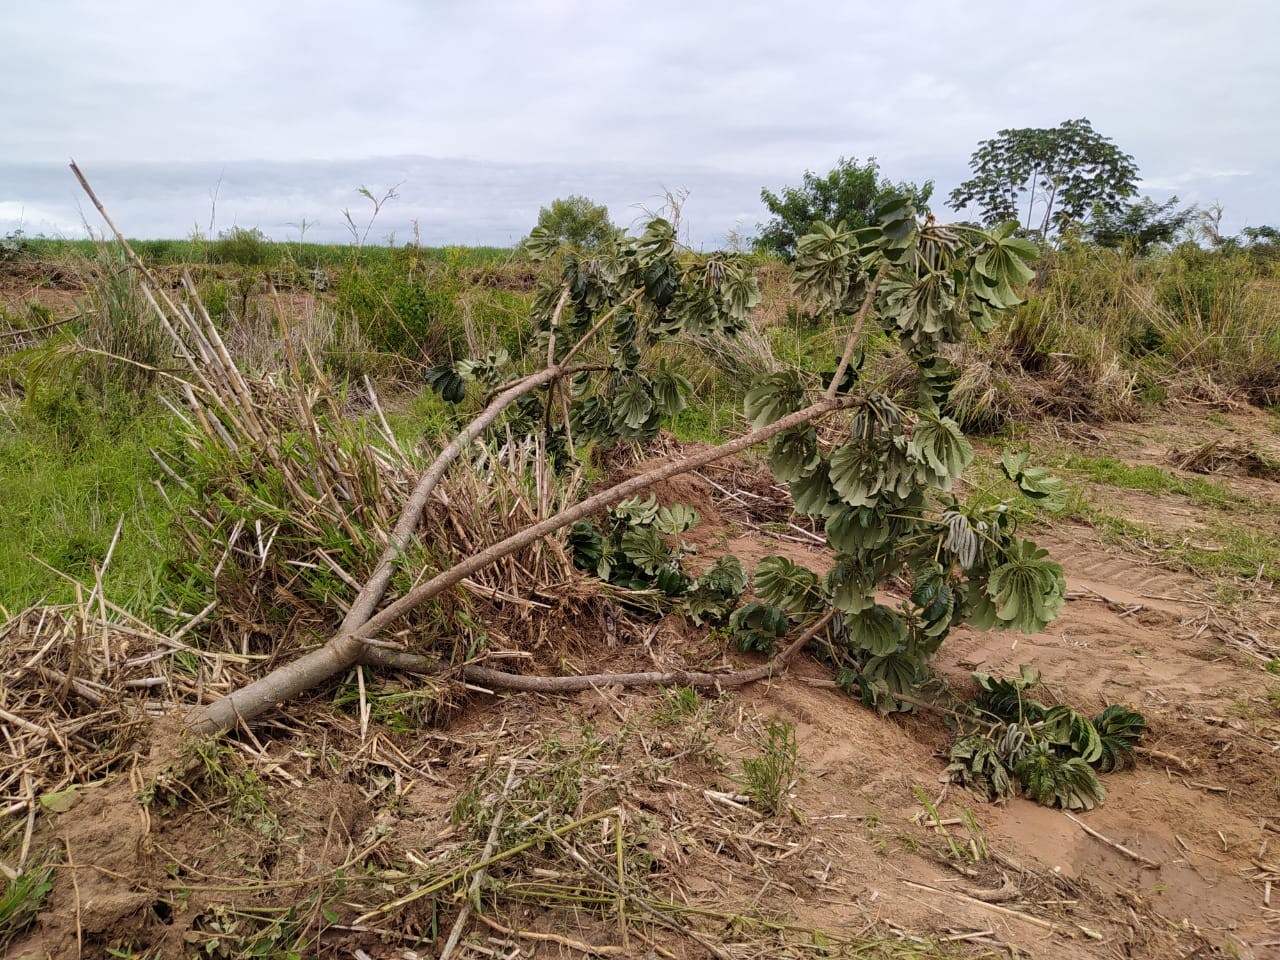 Polícia Ambiental constata derrubada de 144 árvores nativas em propriedades rurais e aplica mais de R$ 40 mil em multas thumbnail